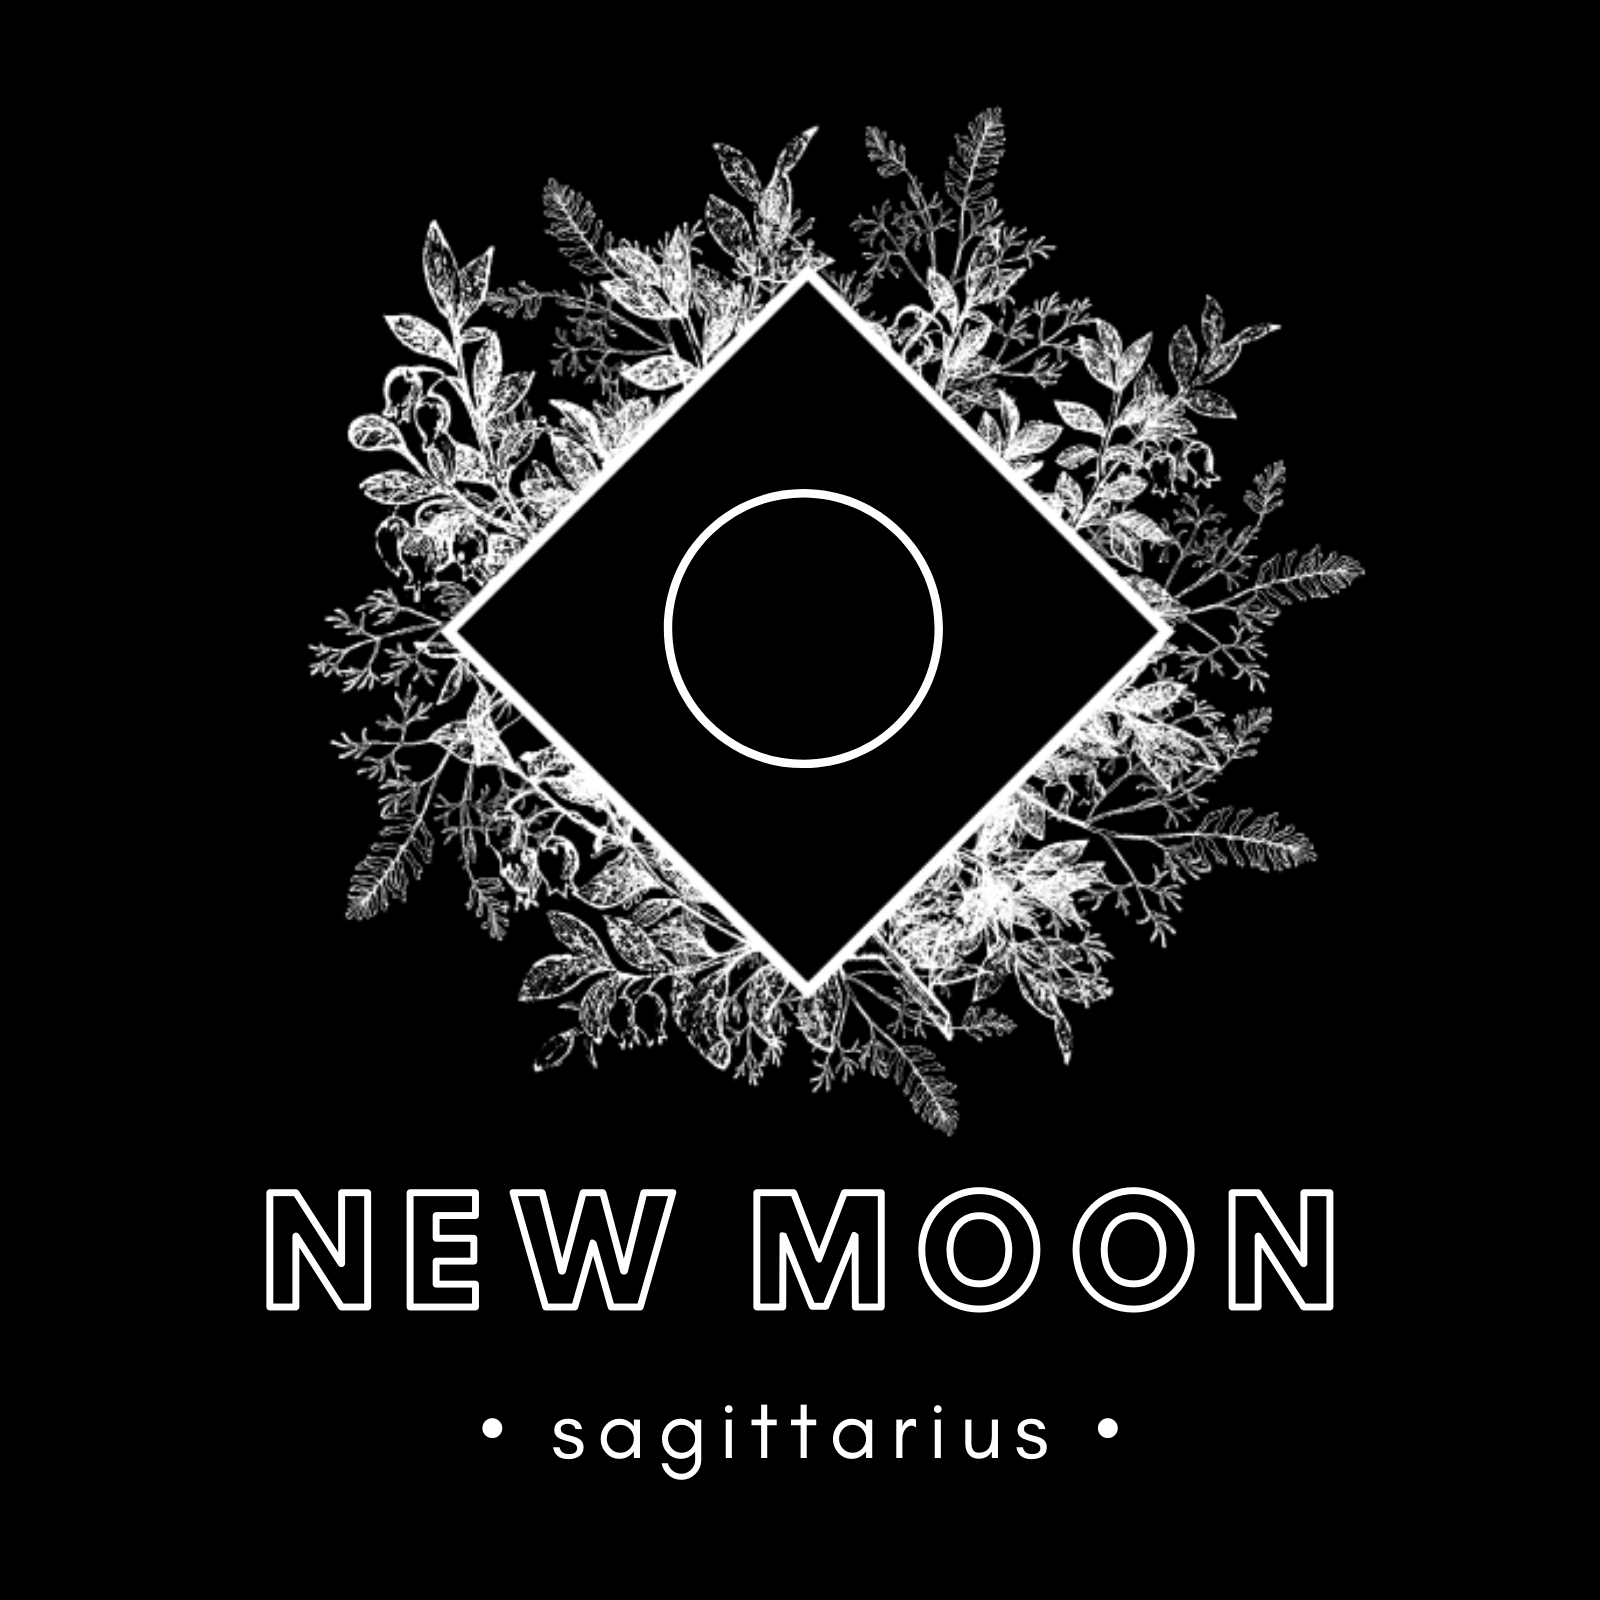 SUPER NEW MOON IN SAGITTARIUS - DEC 14, 2020